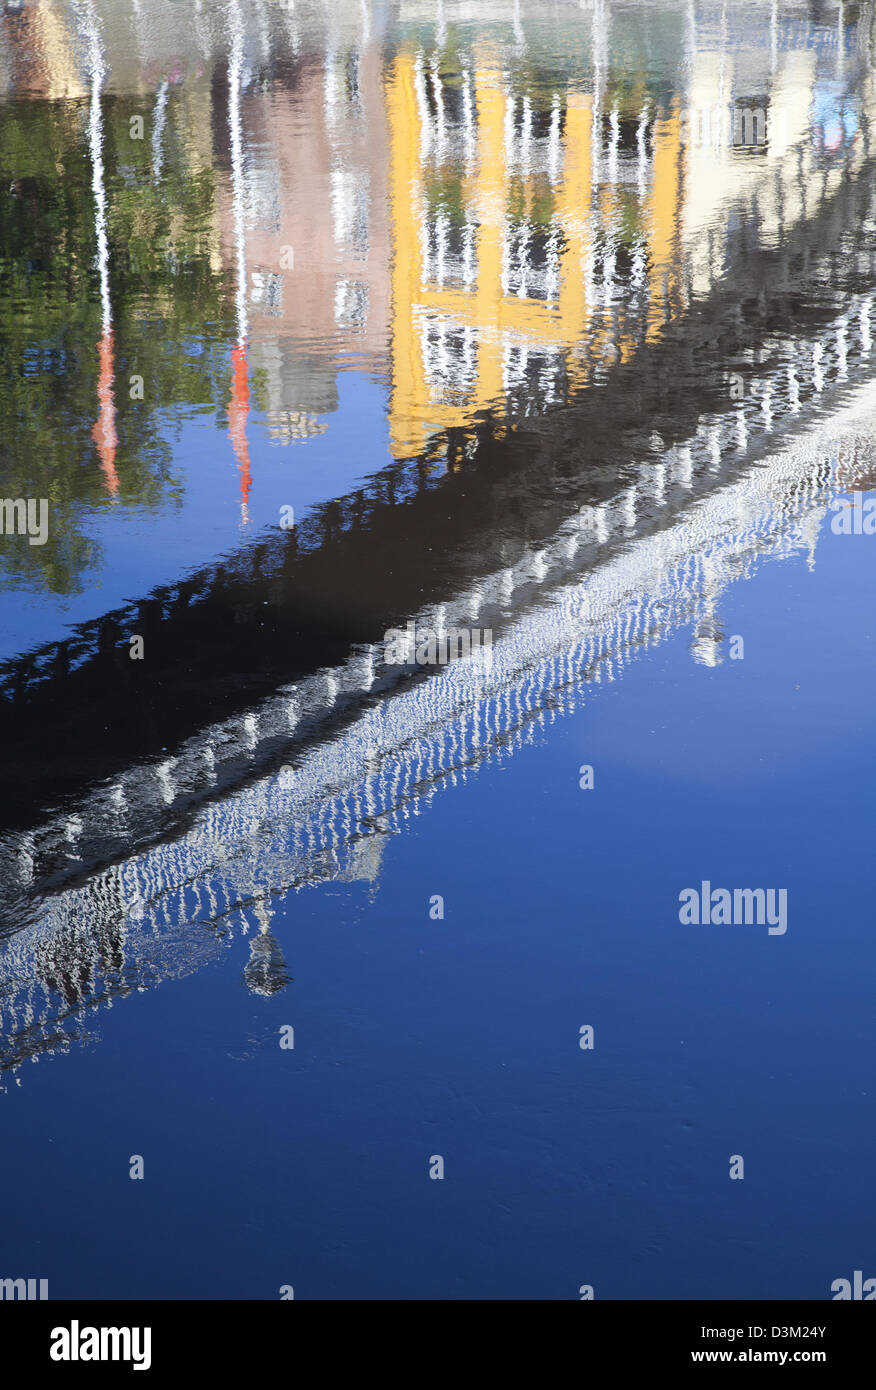 Reflection of Ha'penny Bridge in the River Liffey, Dublin city, County Dublin, Ireland. Stock Photo